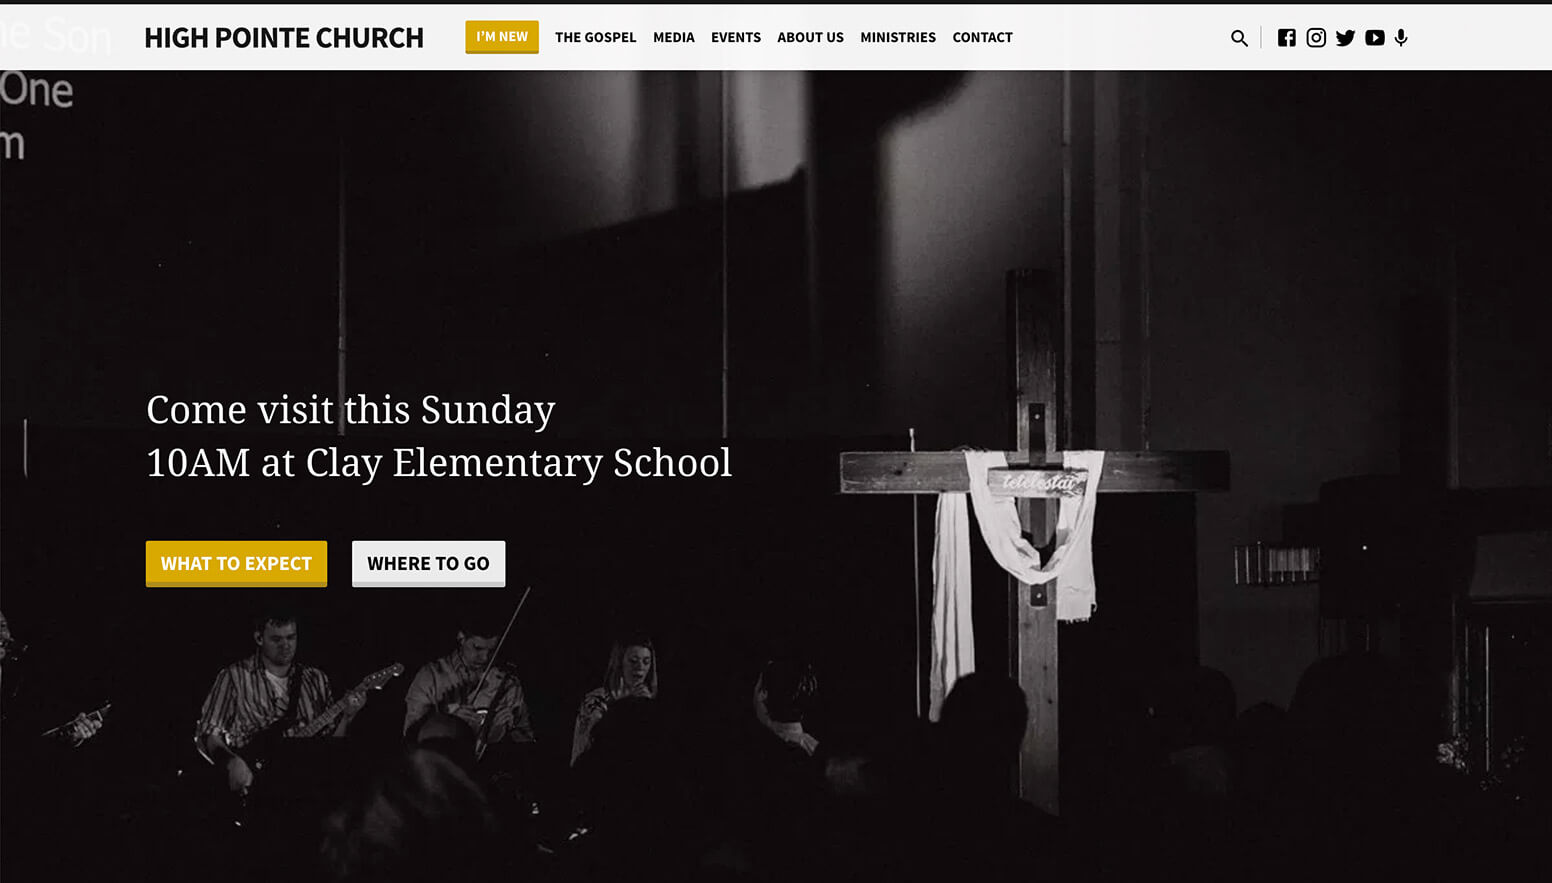 High Pointe Church Website